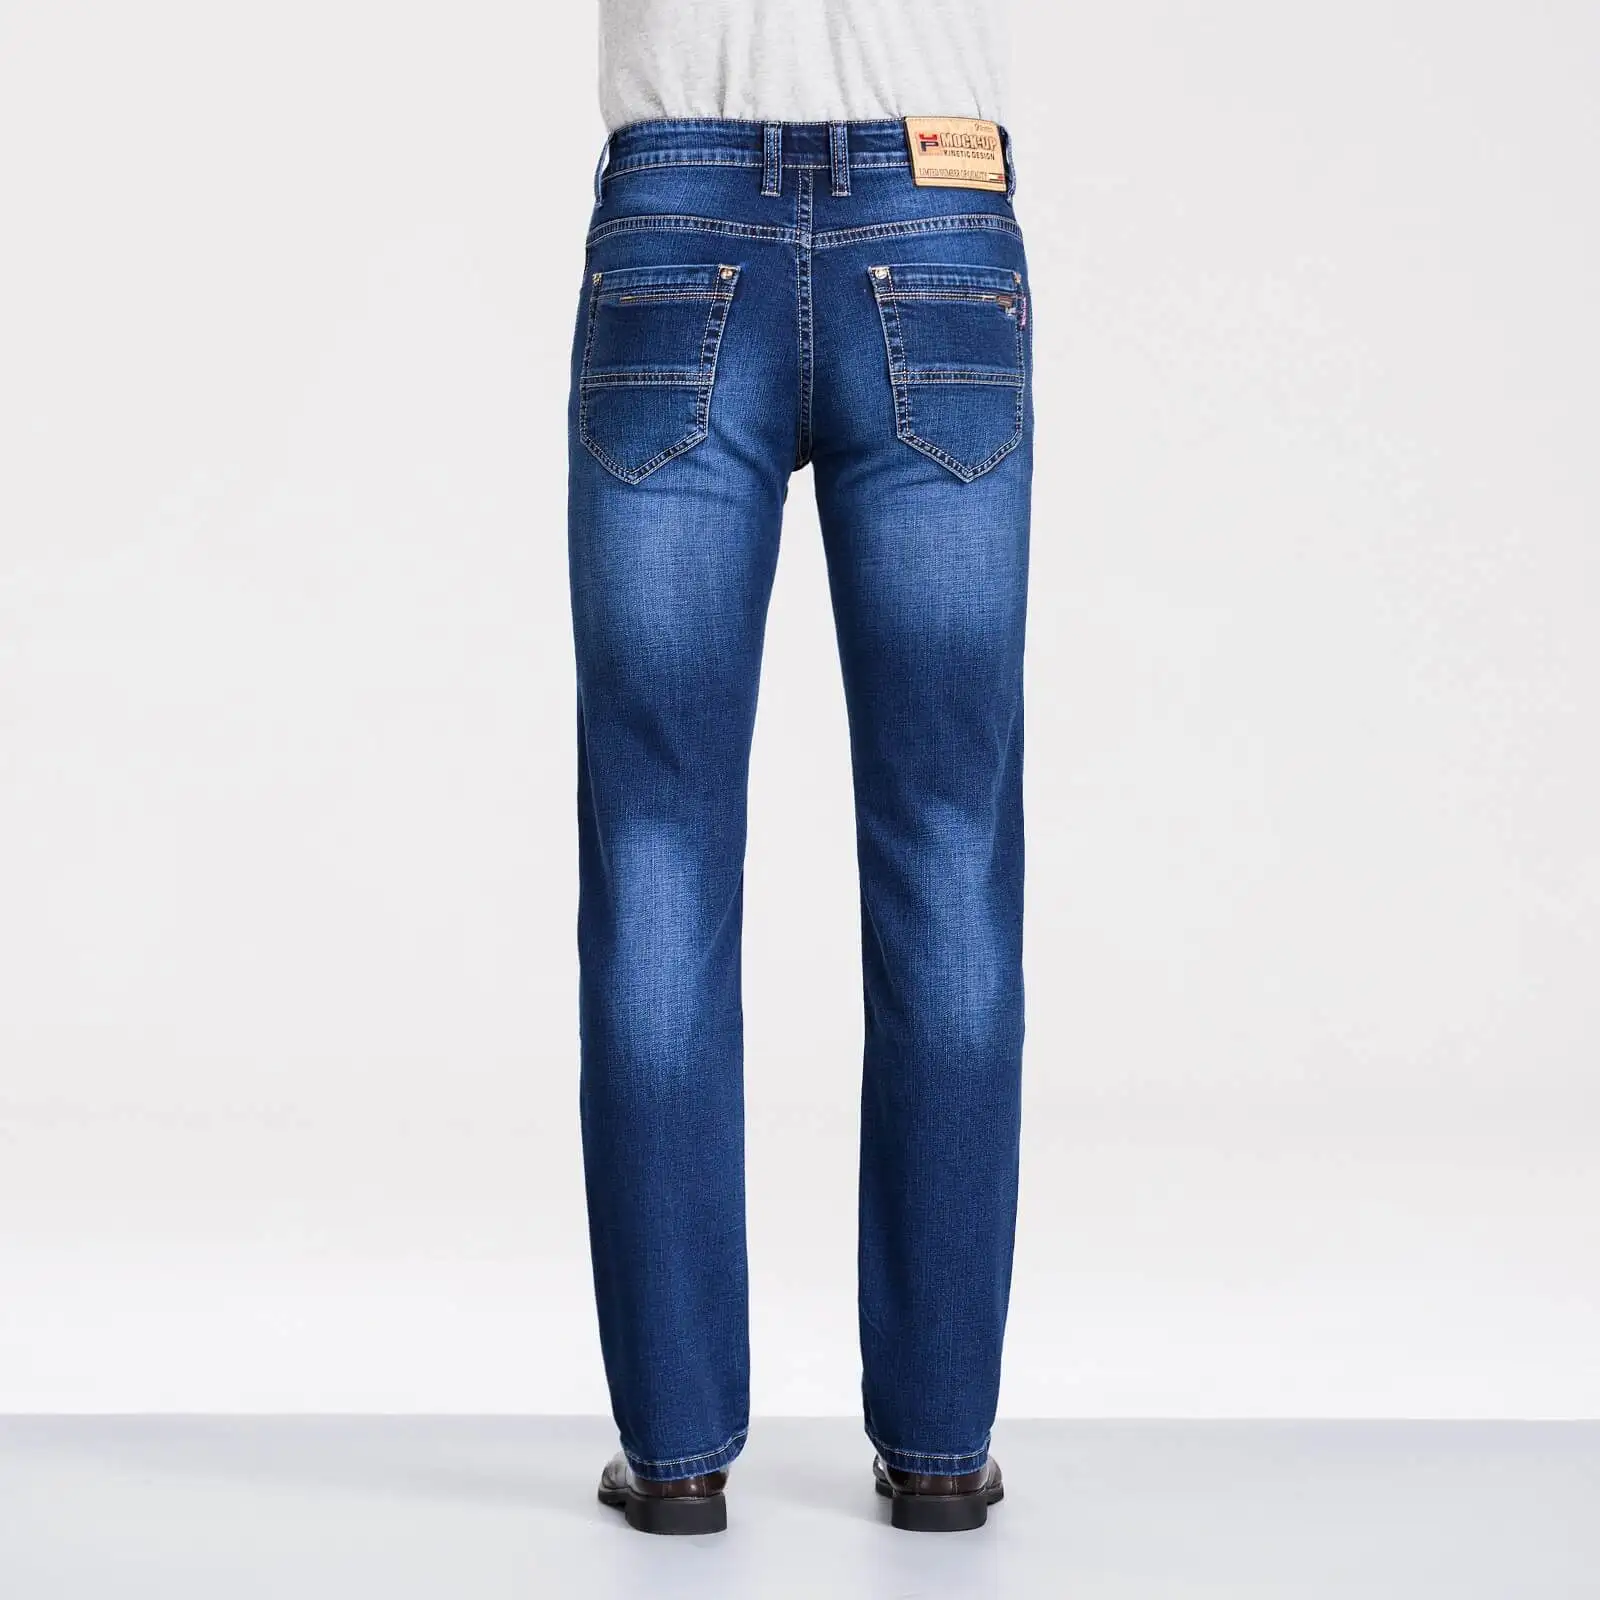 100% оригинал макет бренд MPZ809 джинсы мужские повседневные джинсы облегающие брюки высокое качество deskared2 джинсы мода 38 40 размер